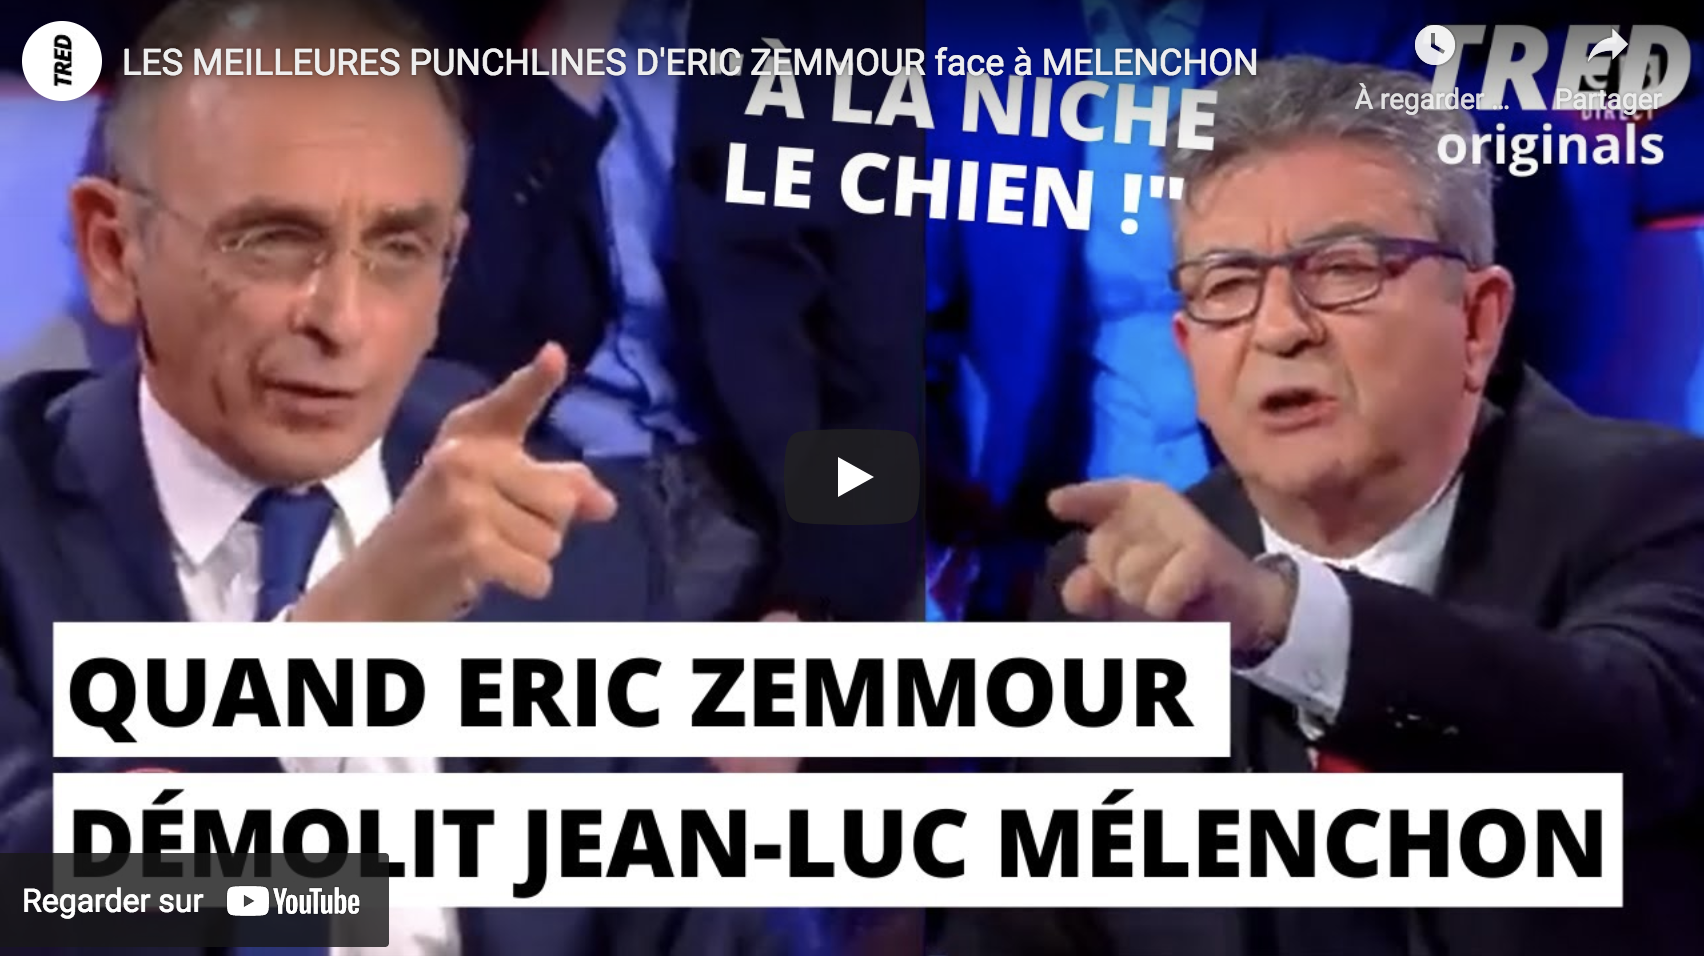 Les meilleures punchlines d’Éric Zemmour face à Jean-Luc Mélenchon (VIDÉO)